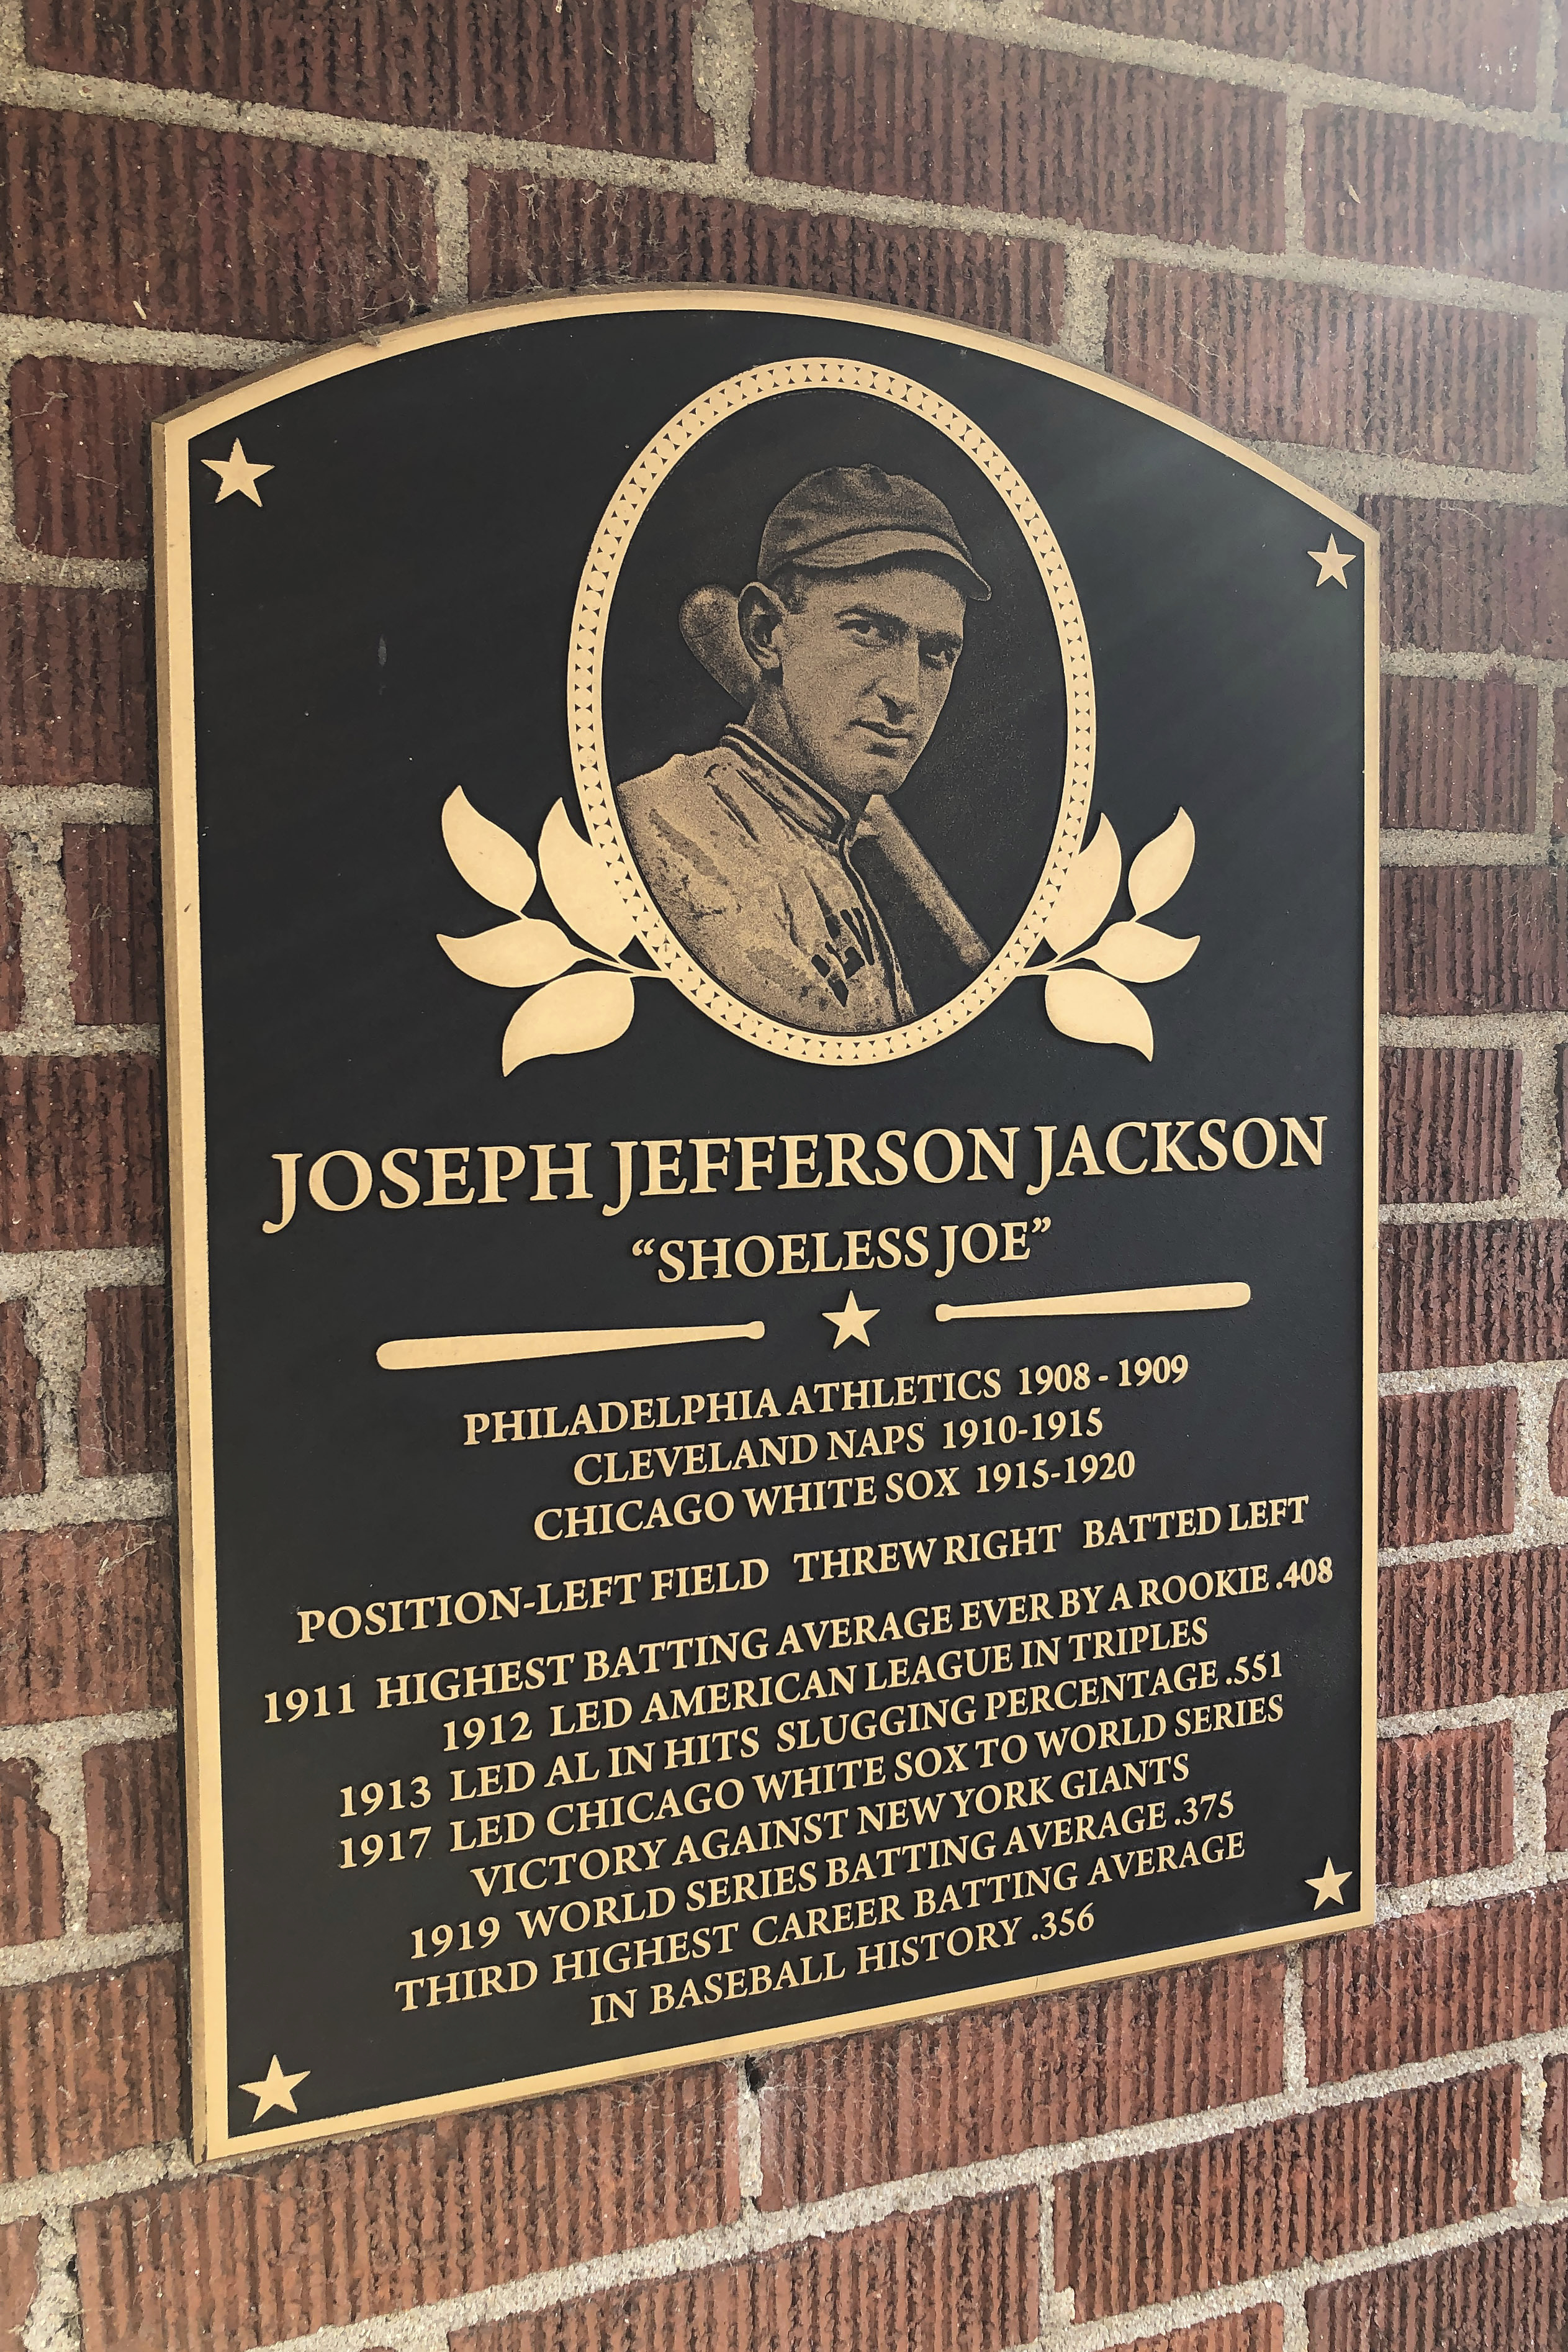 Calling All Baseball Fans: Check Out the Shoeless Joe Jackson vs